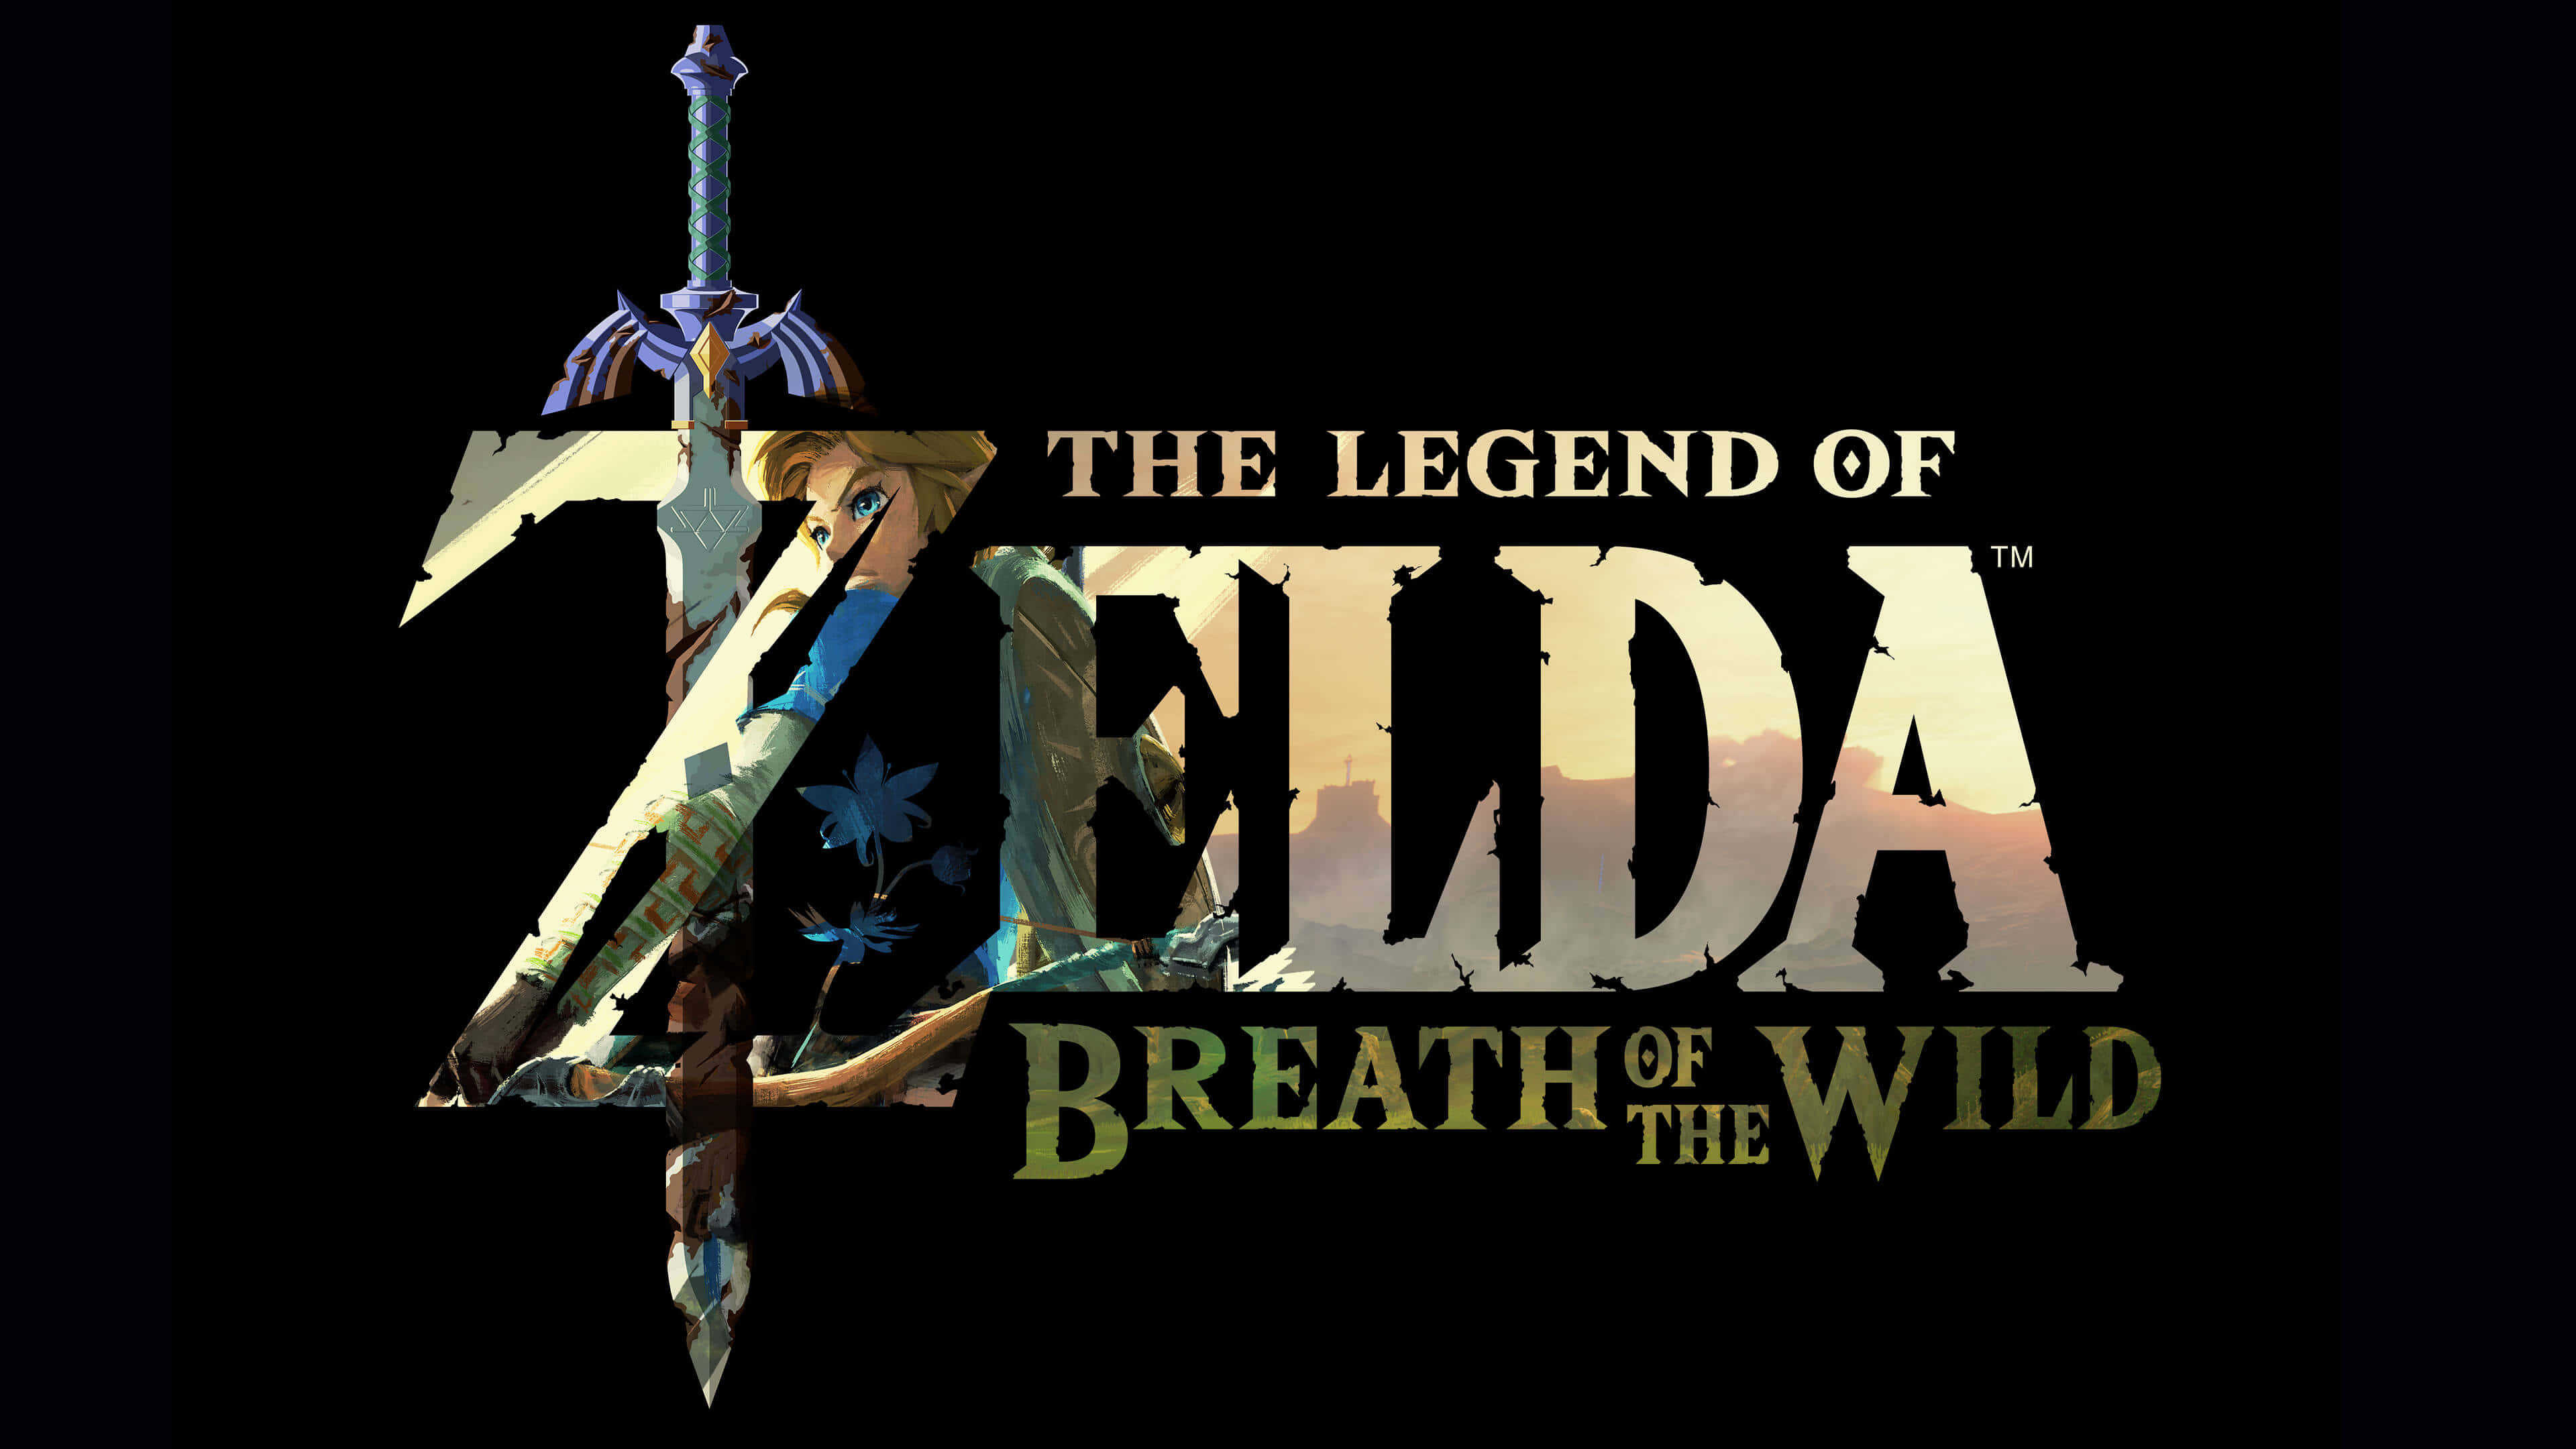 The Legend of Zelda, Breath of Wild, UHD, Gaming, Fantasy adventure, 3840x2160 4K Desktop